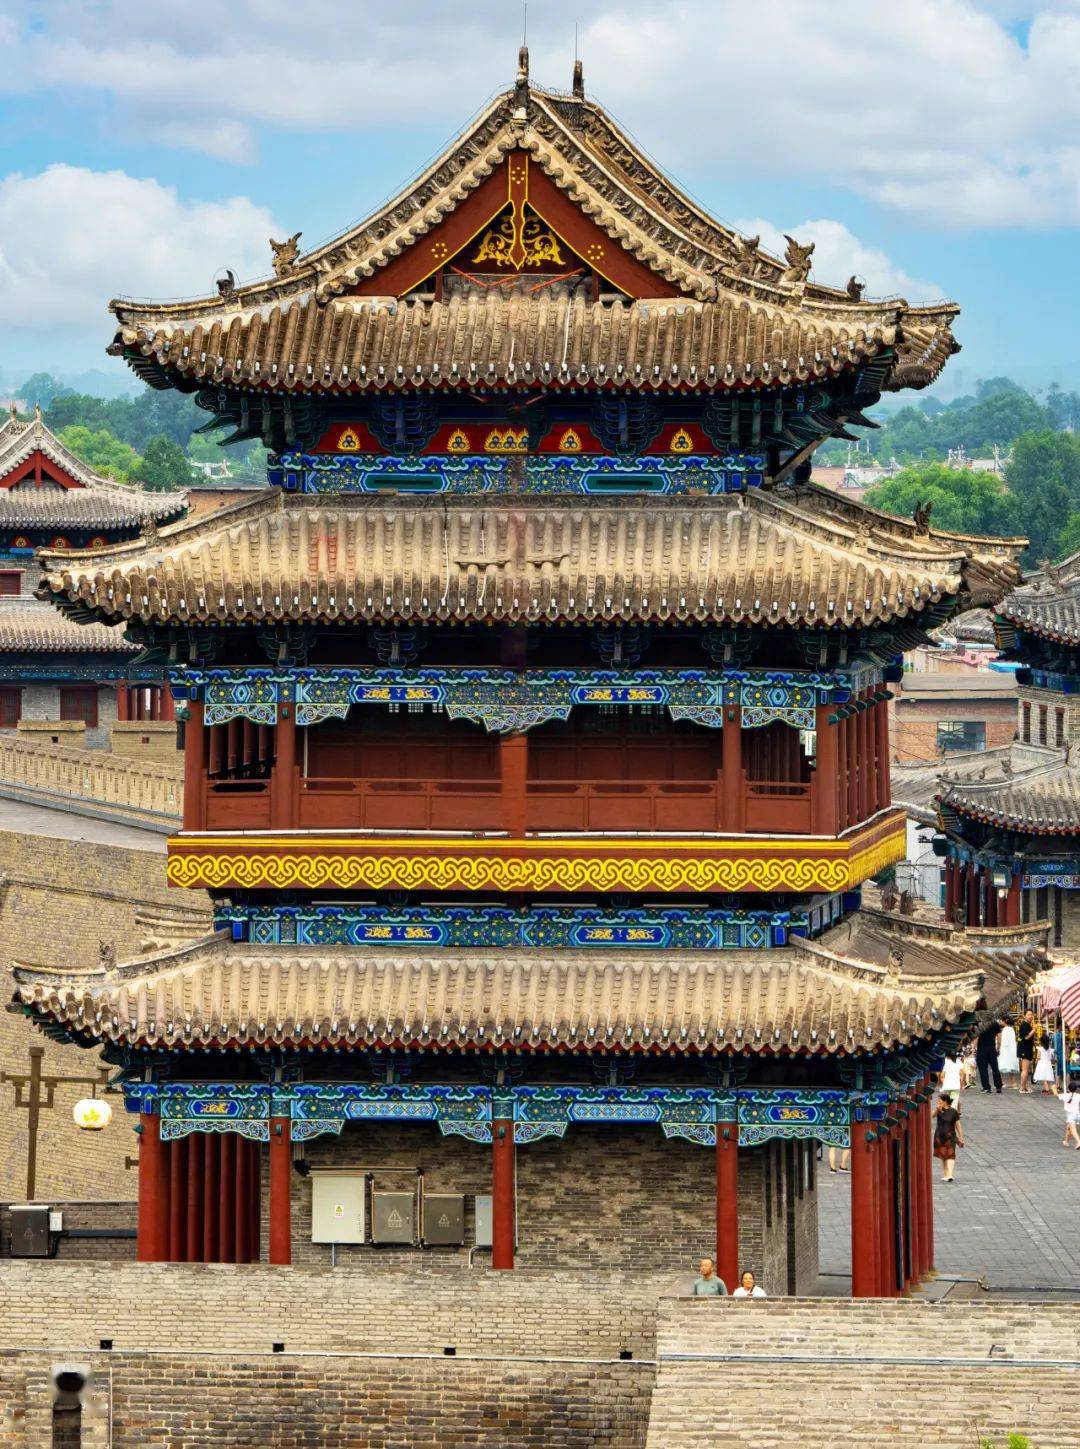 【携程攻略】景点,忻州城楼是一座体现明代建筑风格的古迹。位于忻州市旧城北门。始建于…